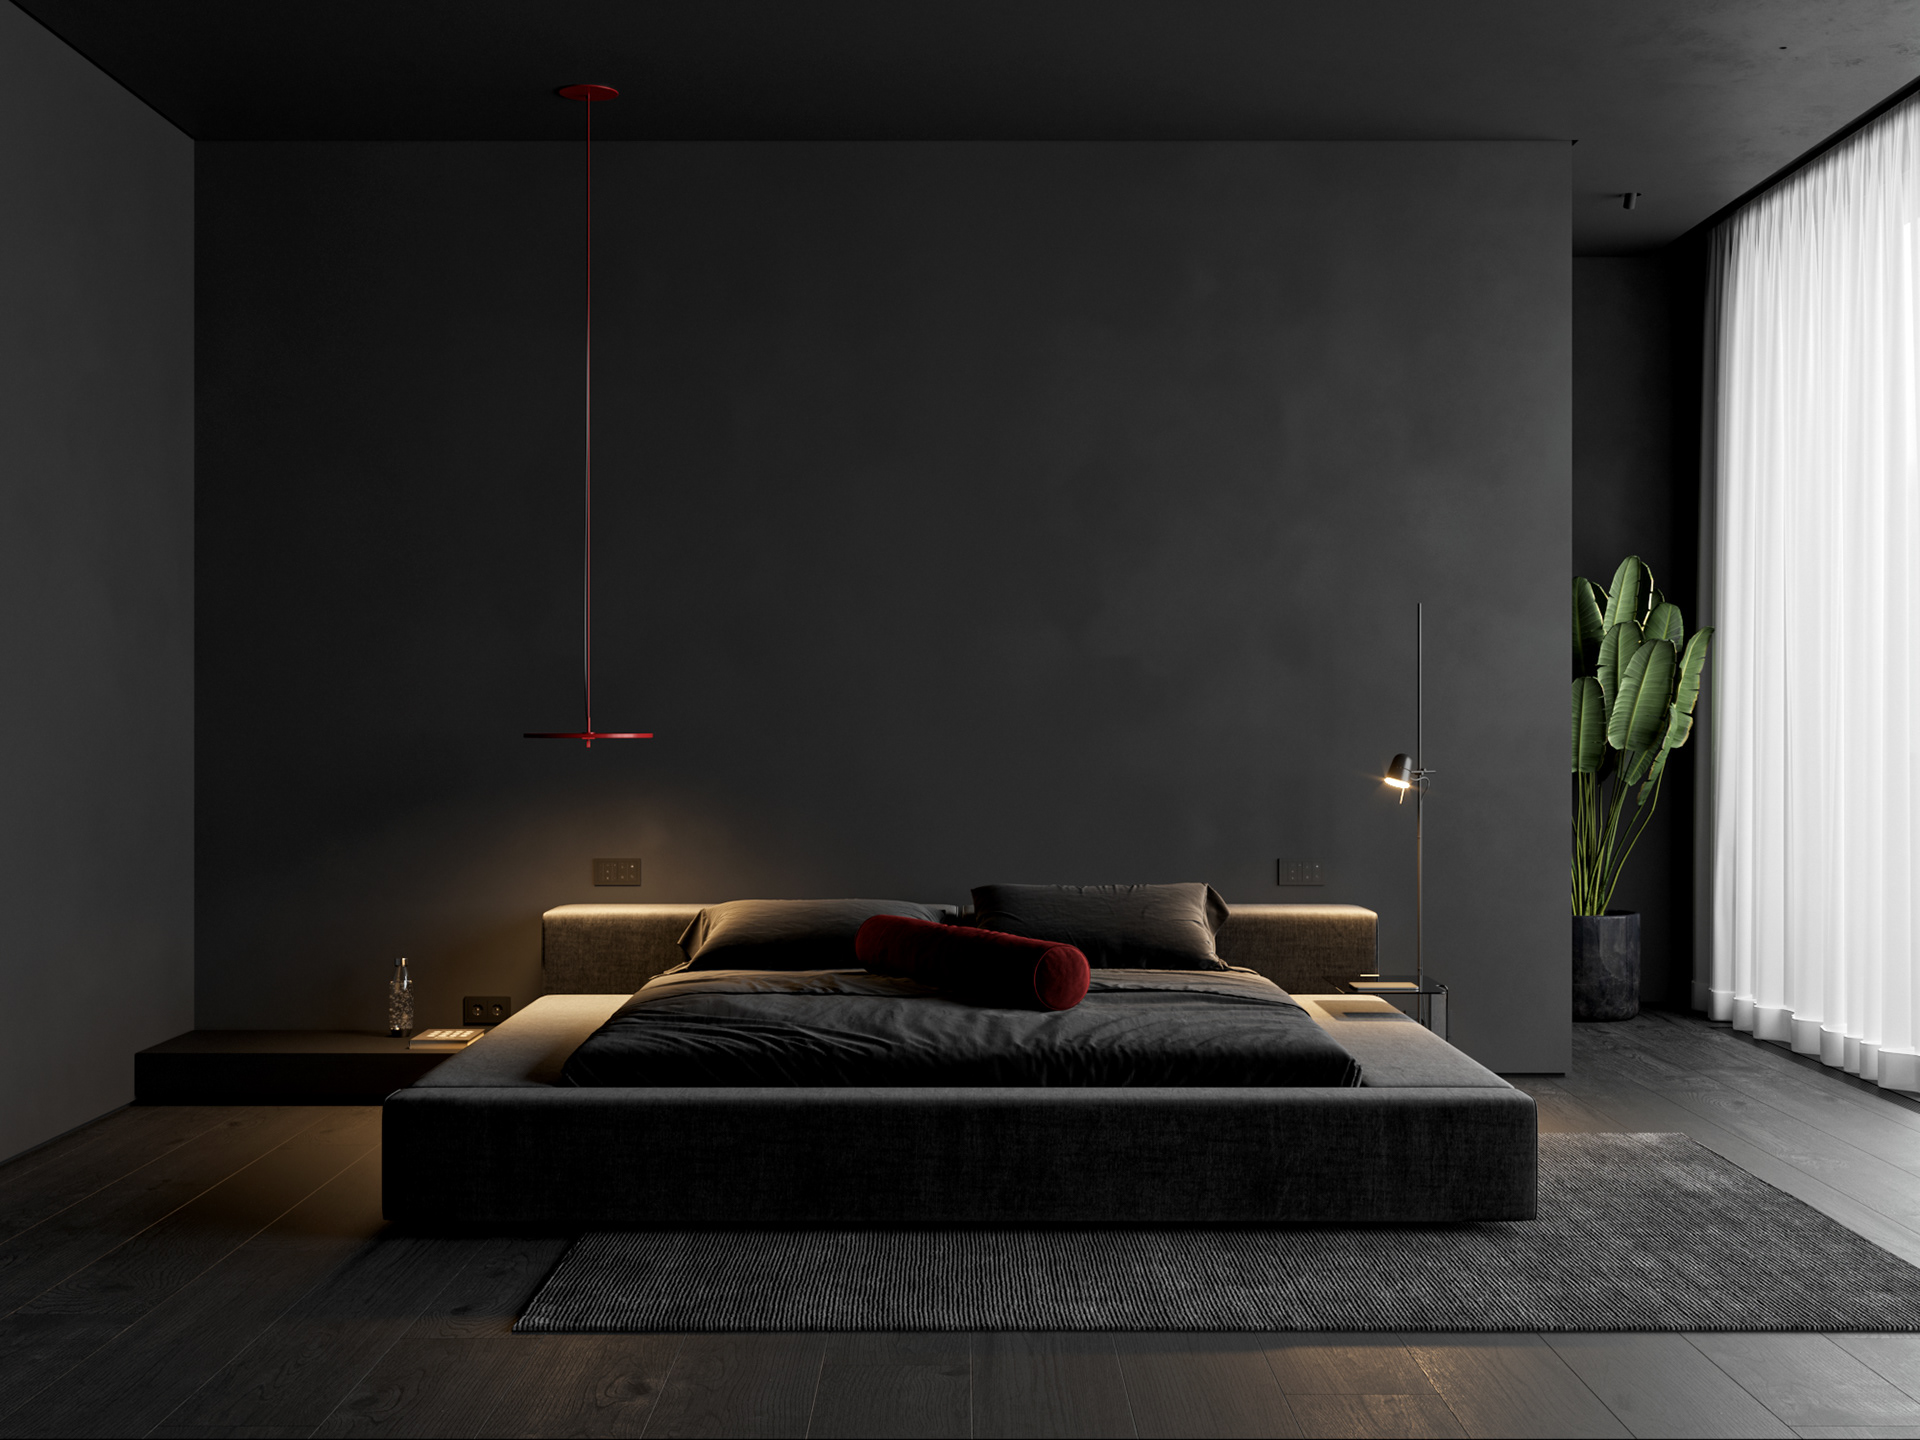 De zwarte vloer, met de brede planken geven de slaapkamer heel veel sfeer en warmte.